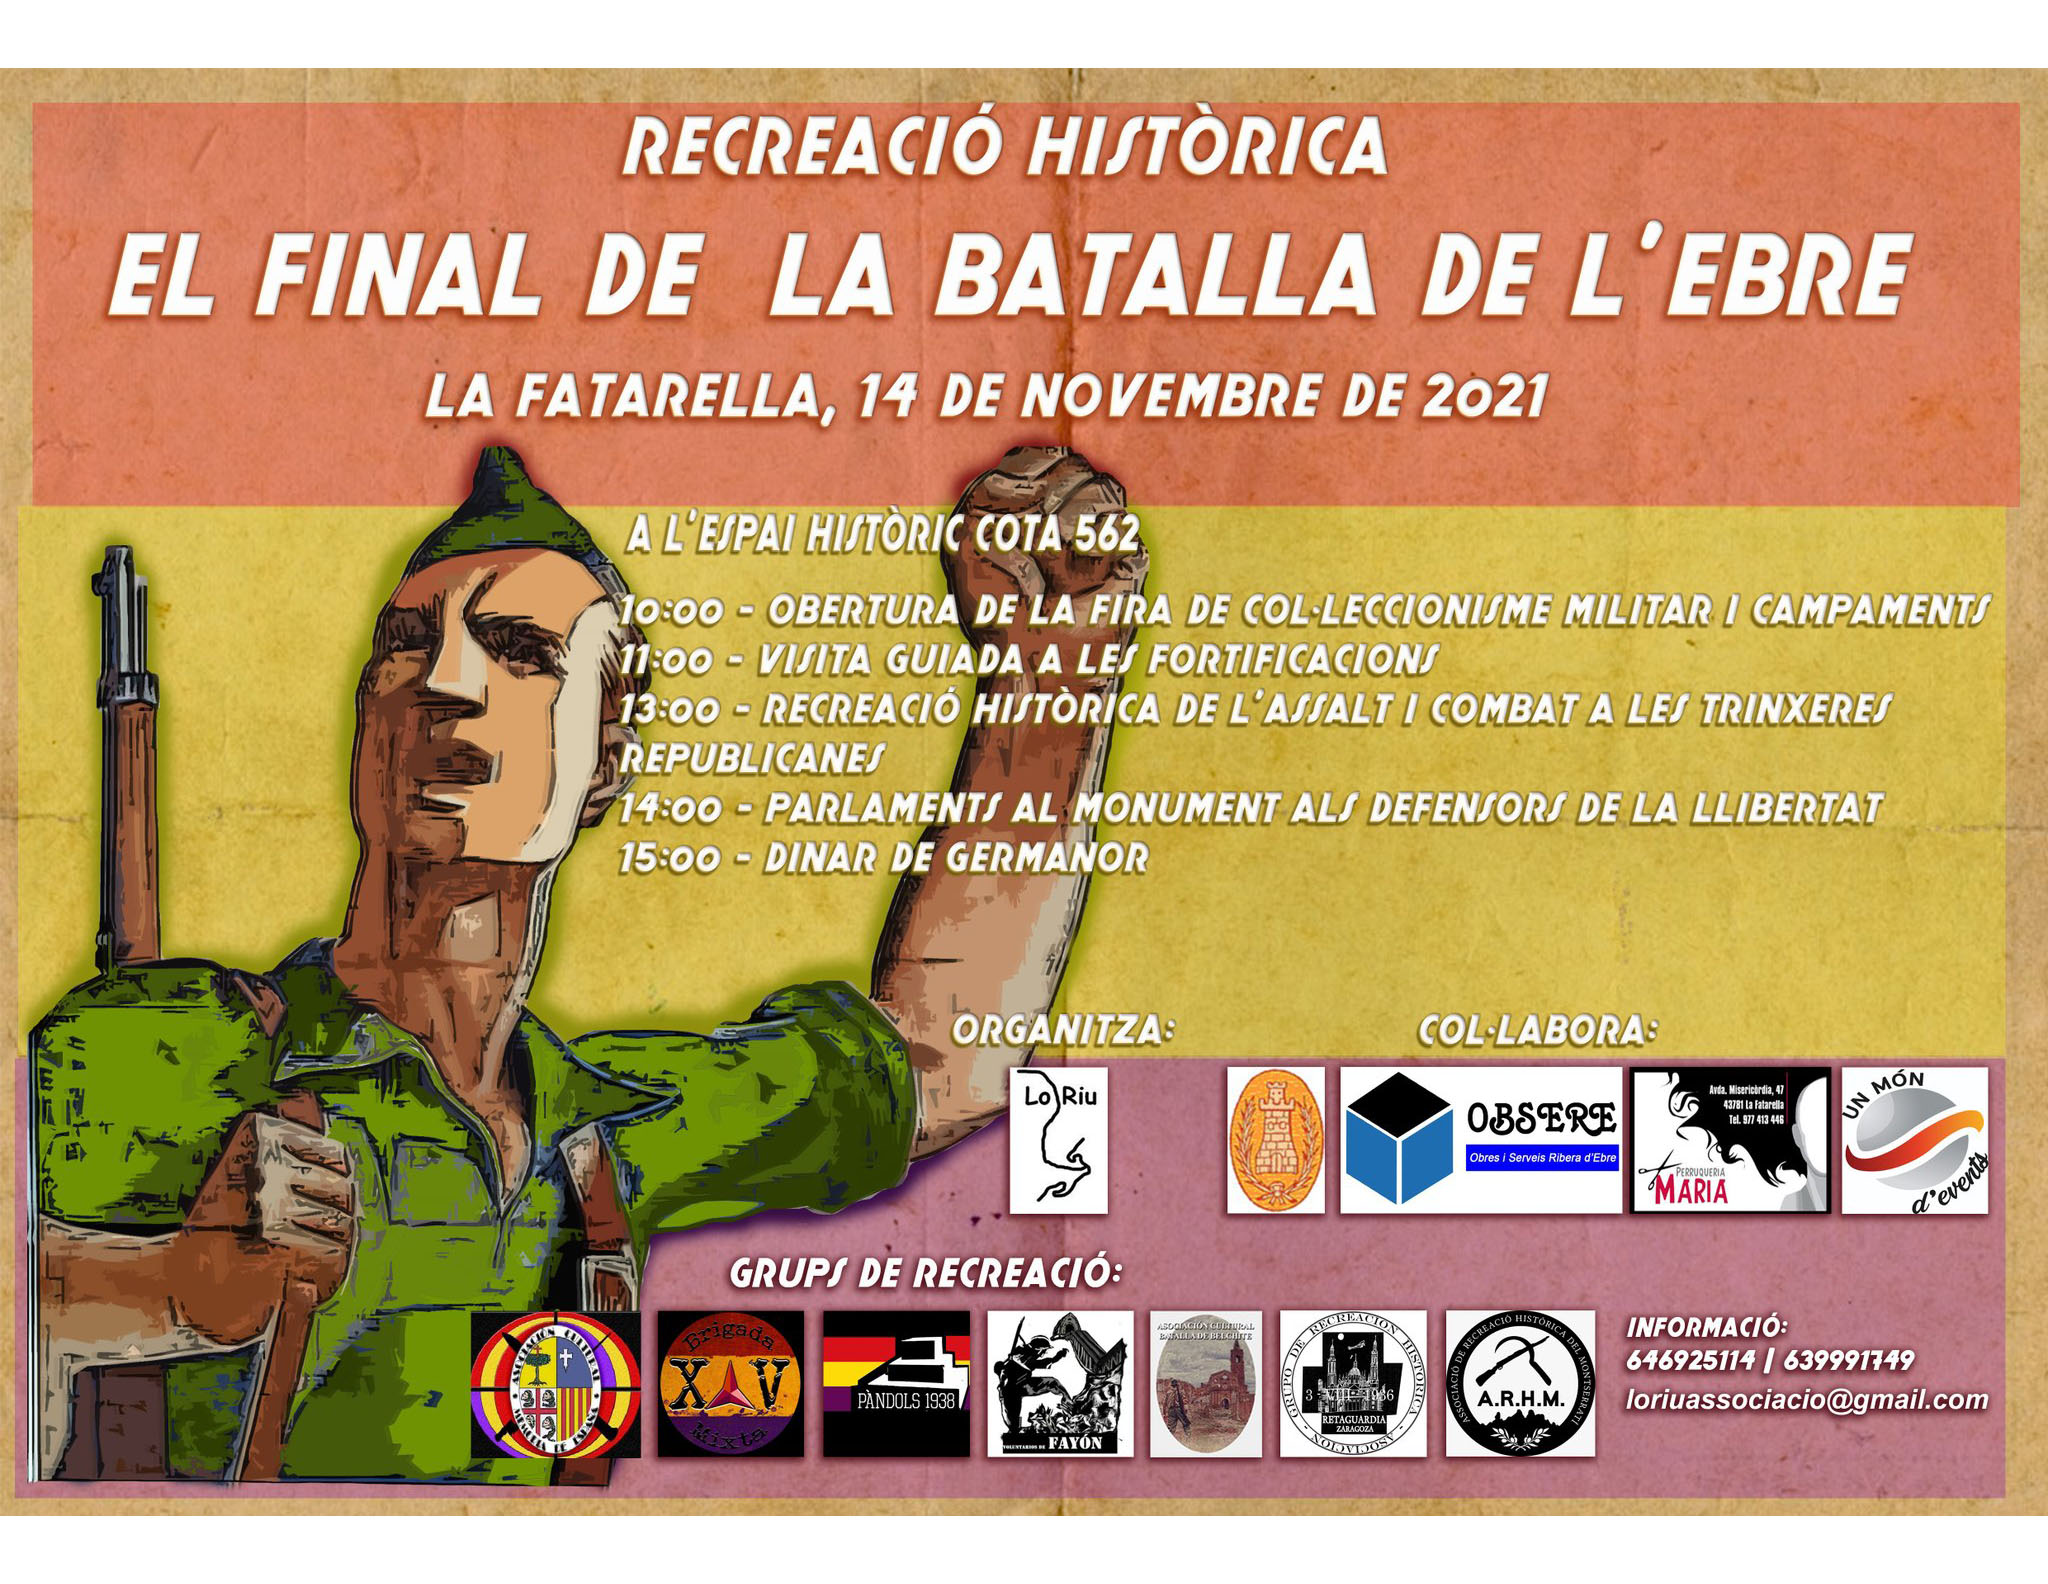 L'Associació Lo Riu organitza la recreació històrica "El final de la Batalla de l'Ebre" a la Fatarella